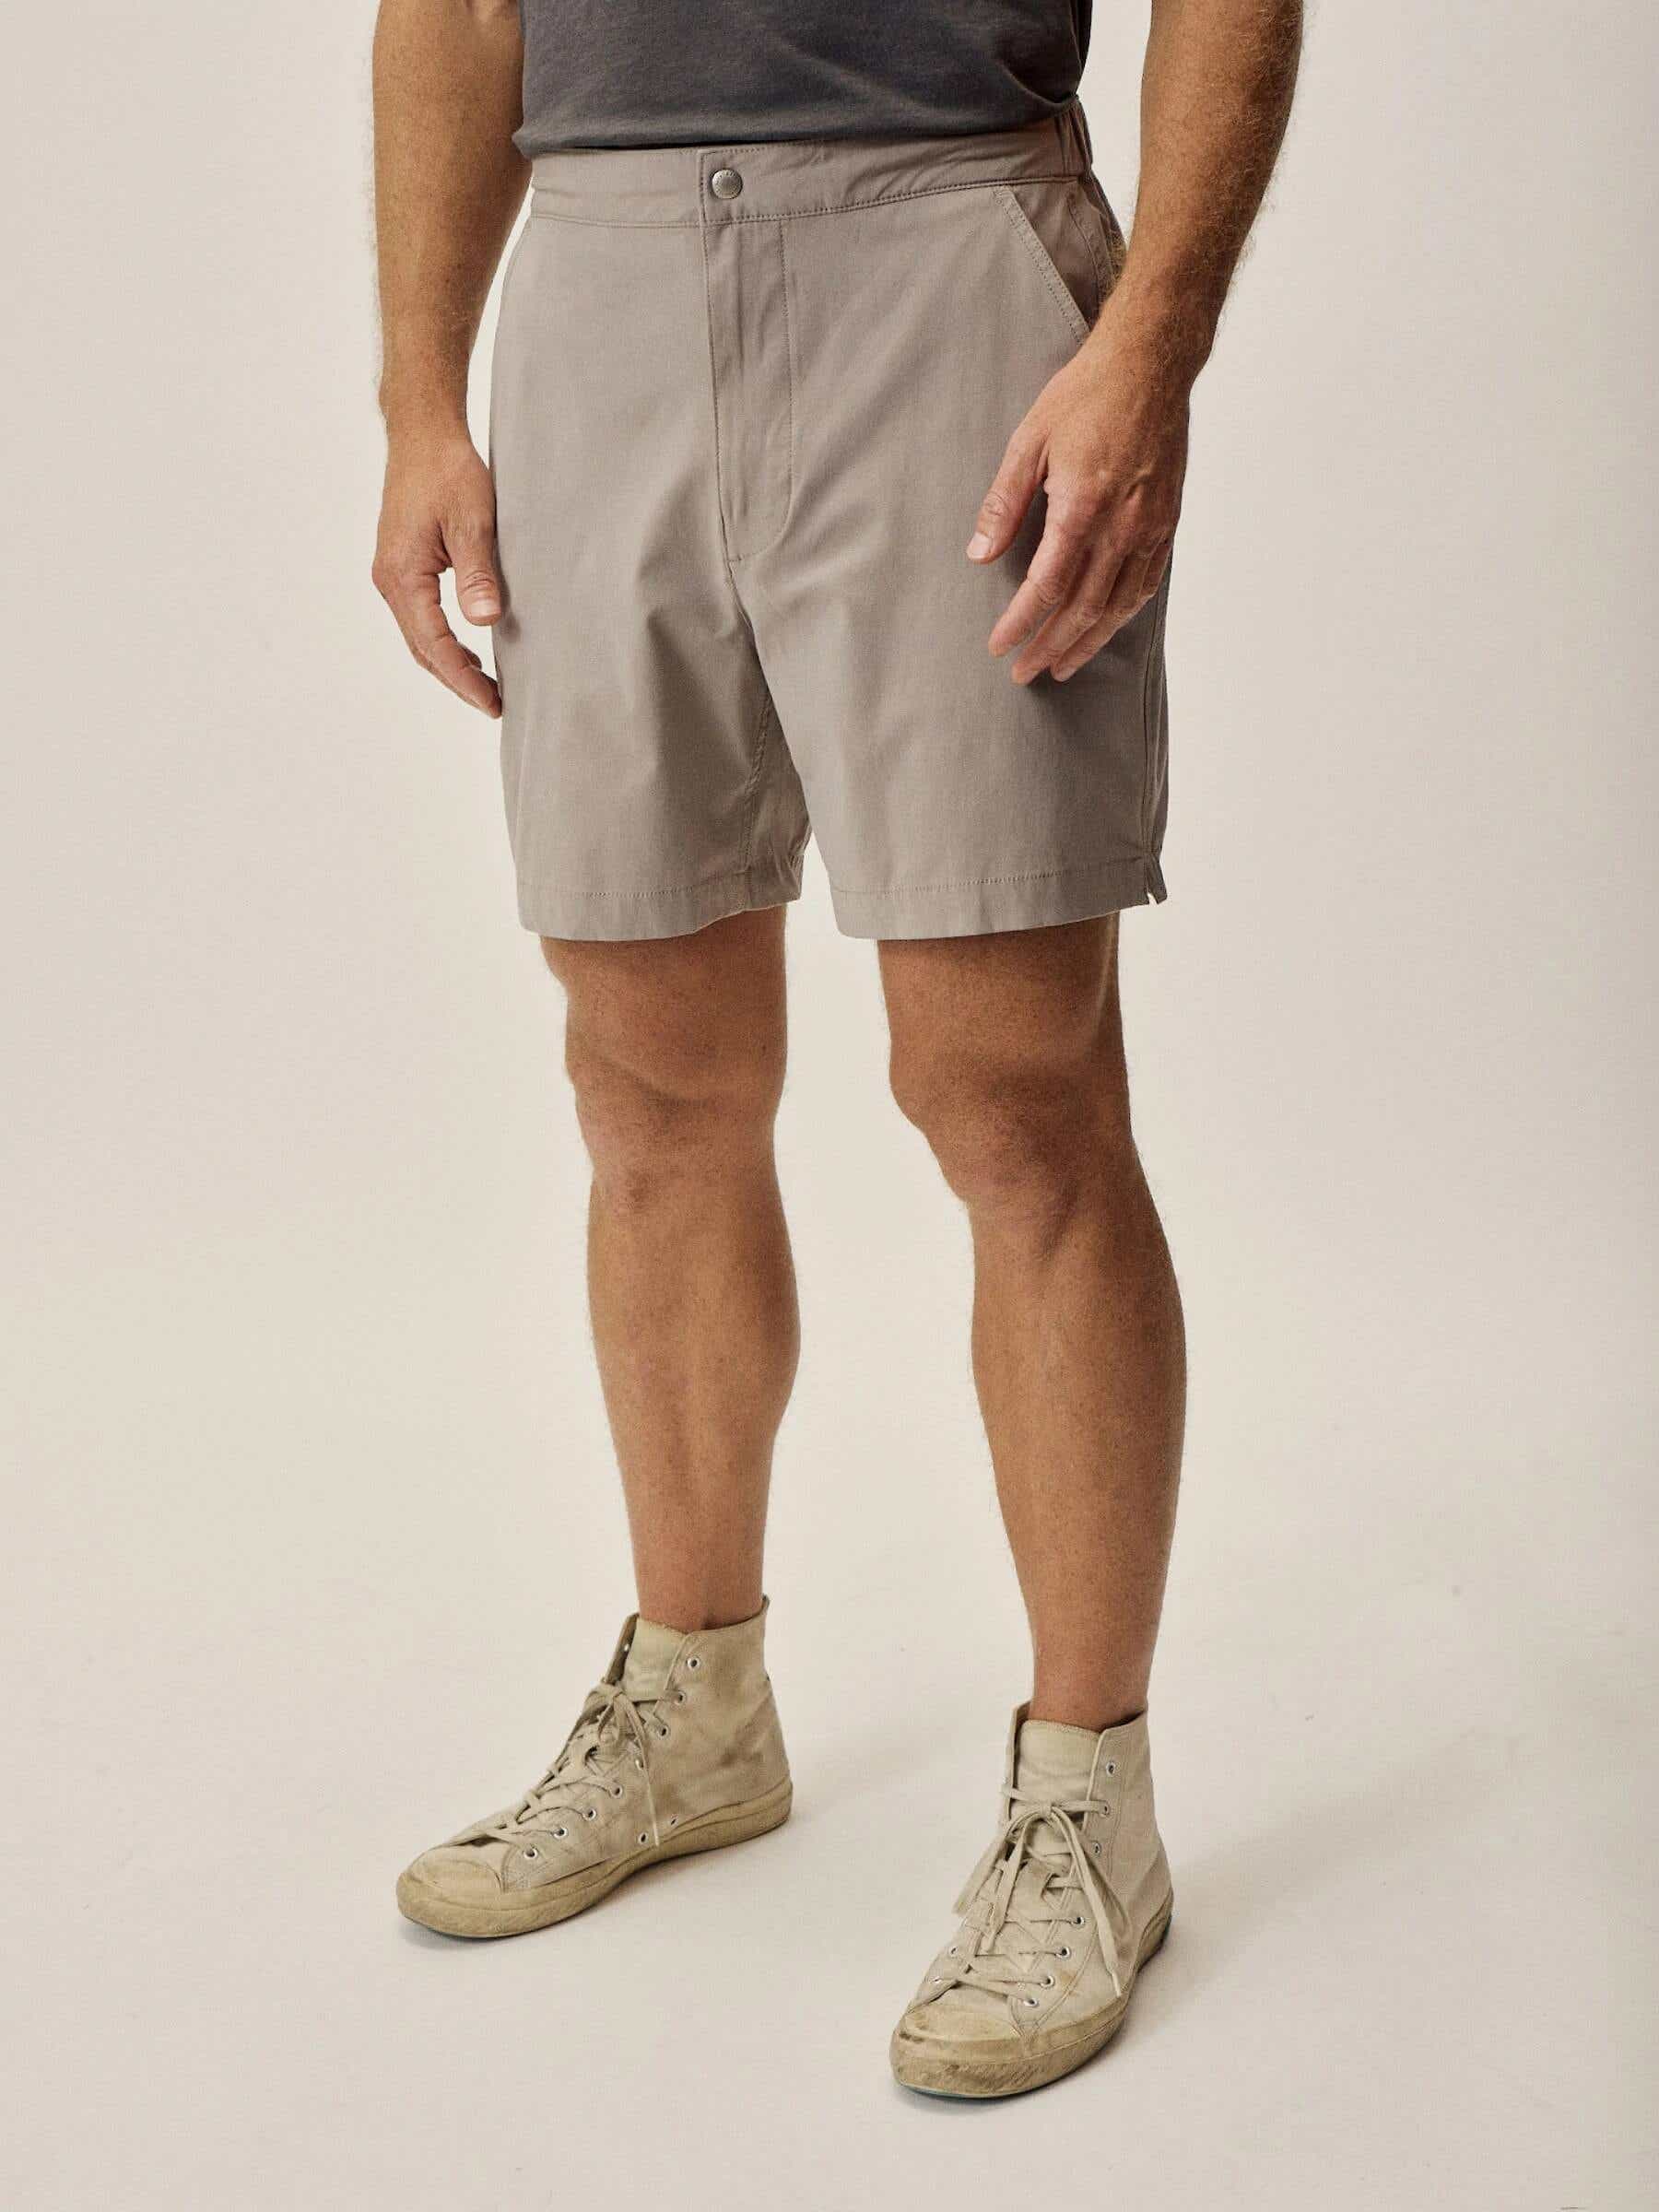 buck mason deck shorts